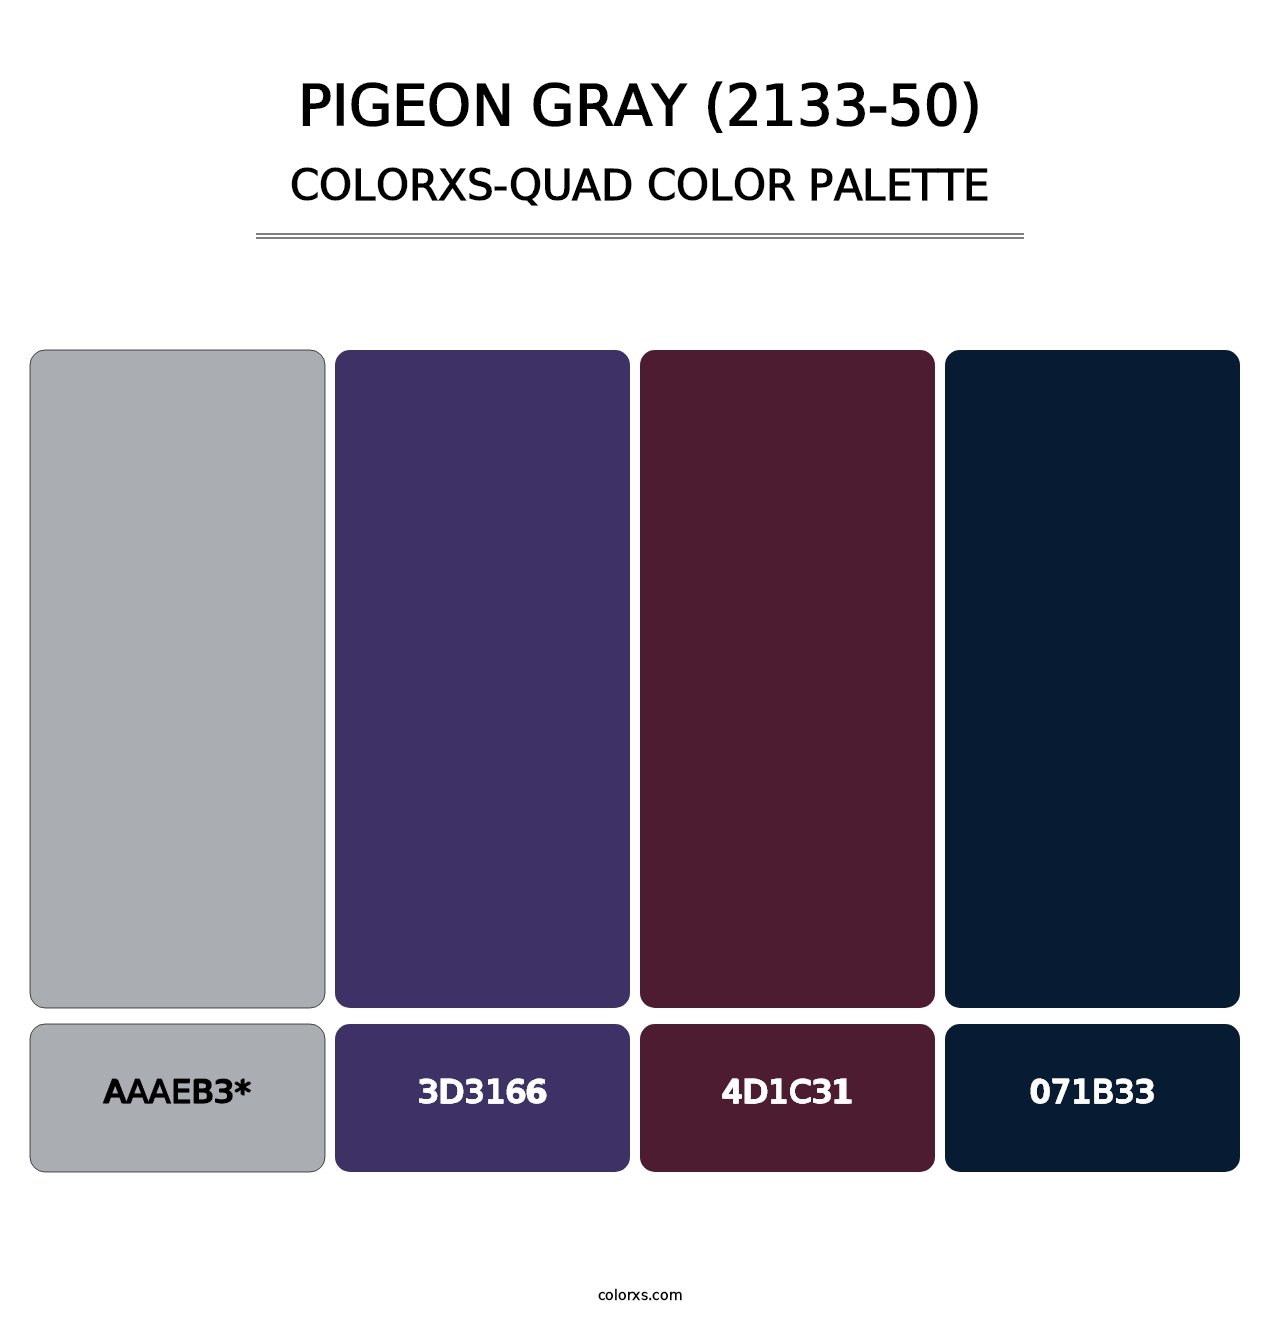 Pigeon Gray (2133-50) - Colorxs Quad Palette